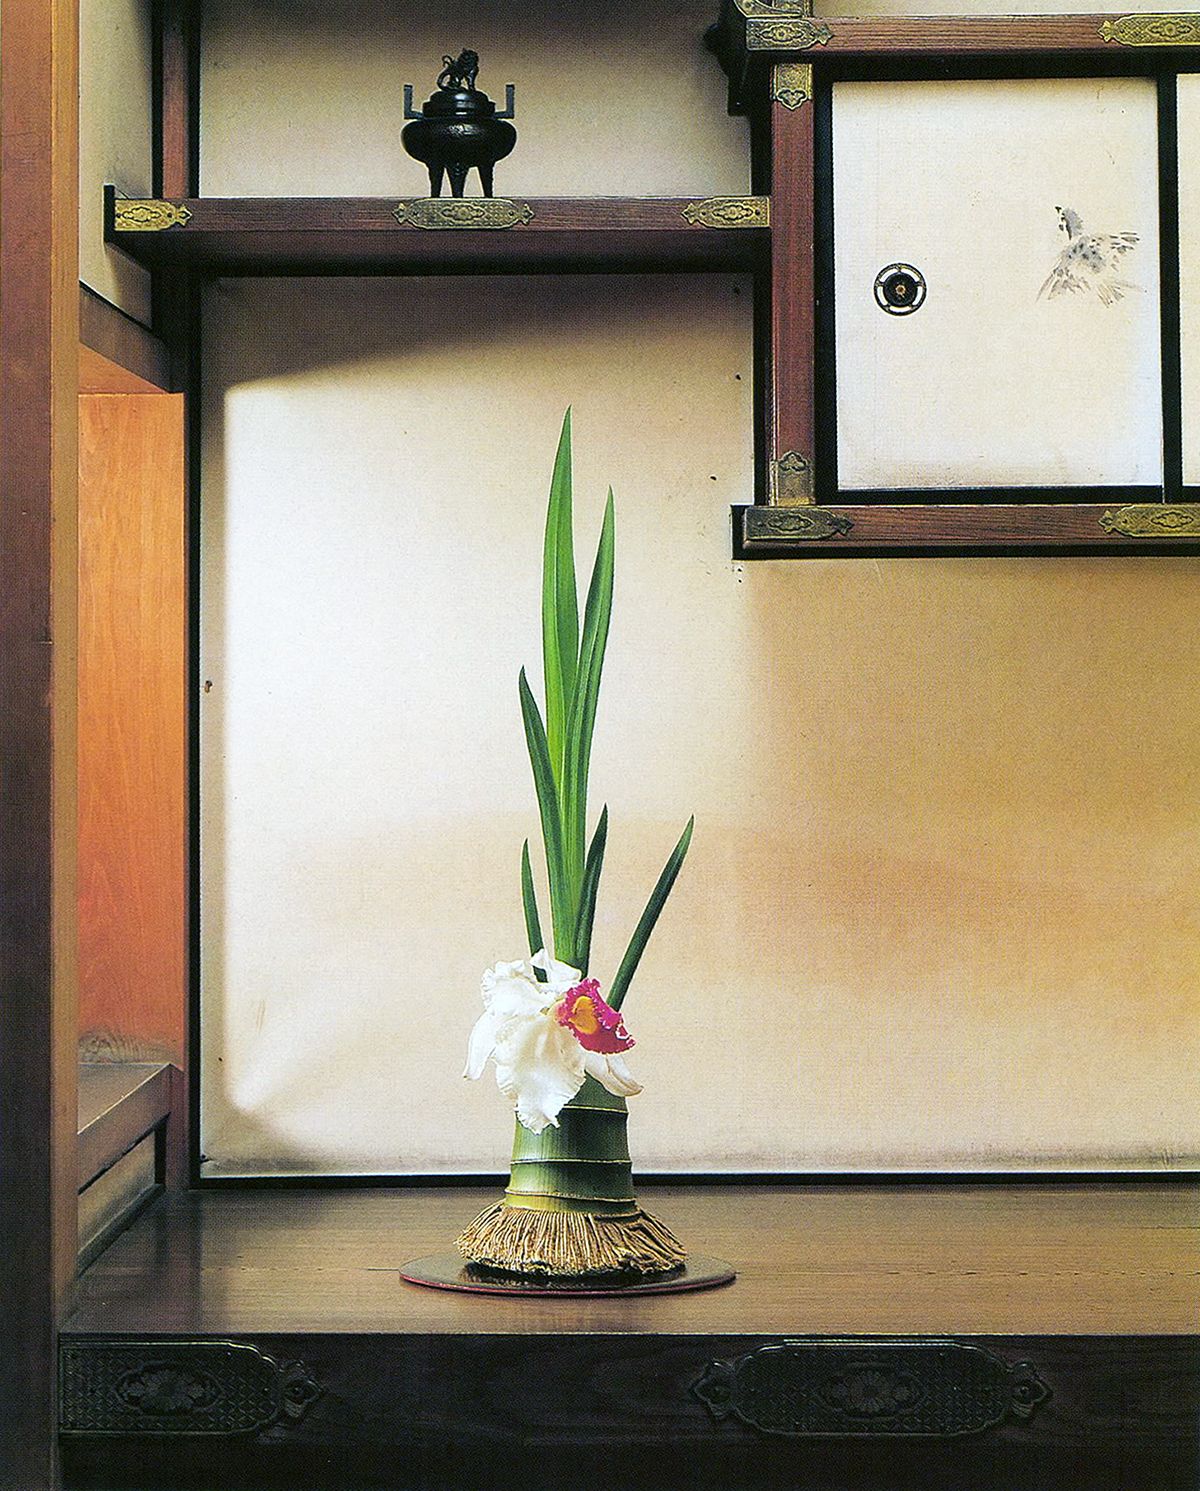 7月 家元のいけばな 御室流「涼を楽しむ青竹三昧」【生け花、いけばな